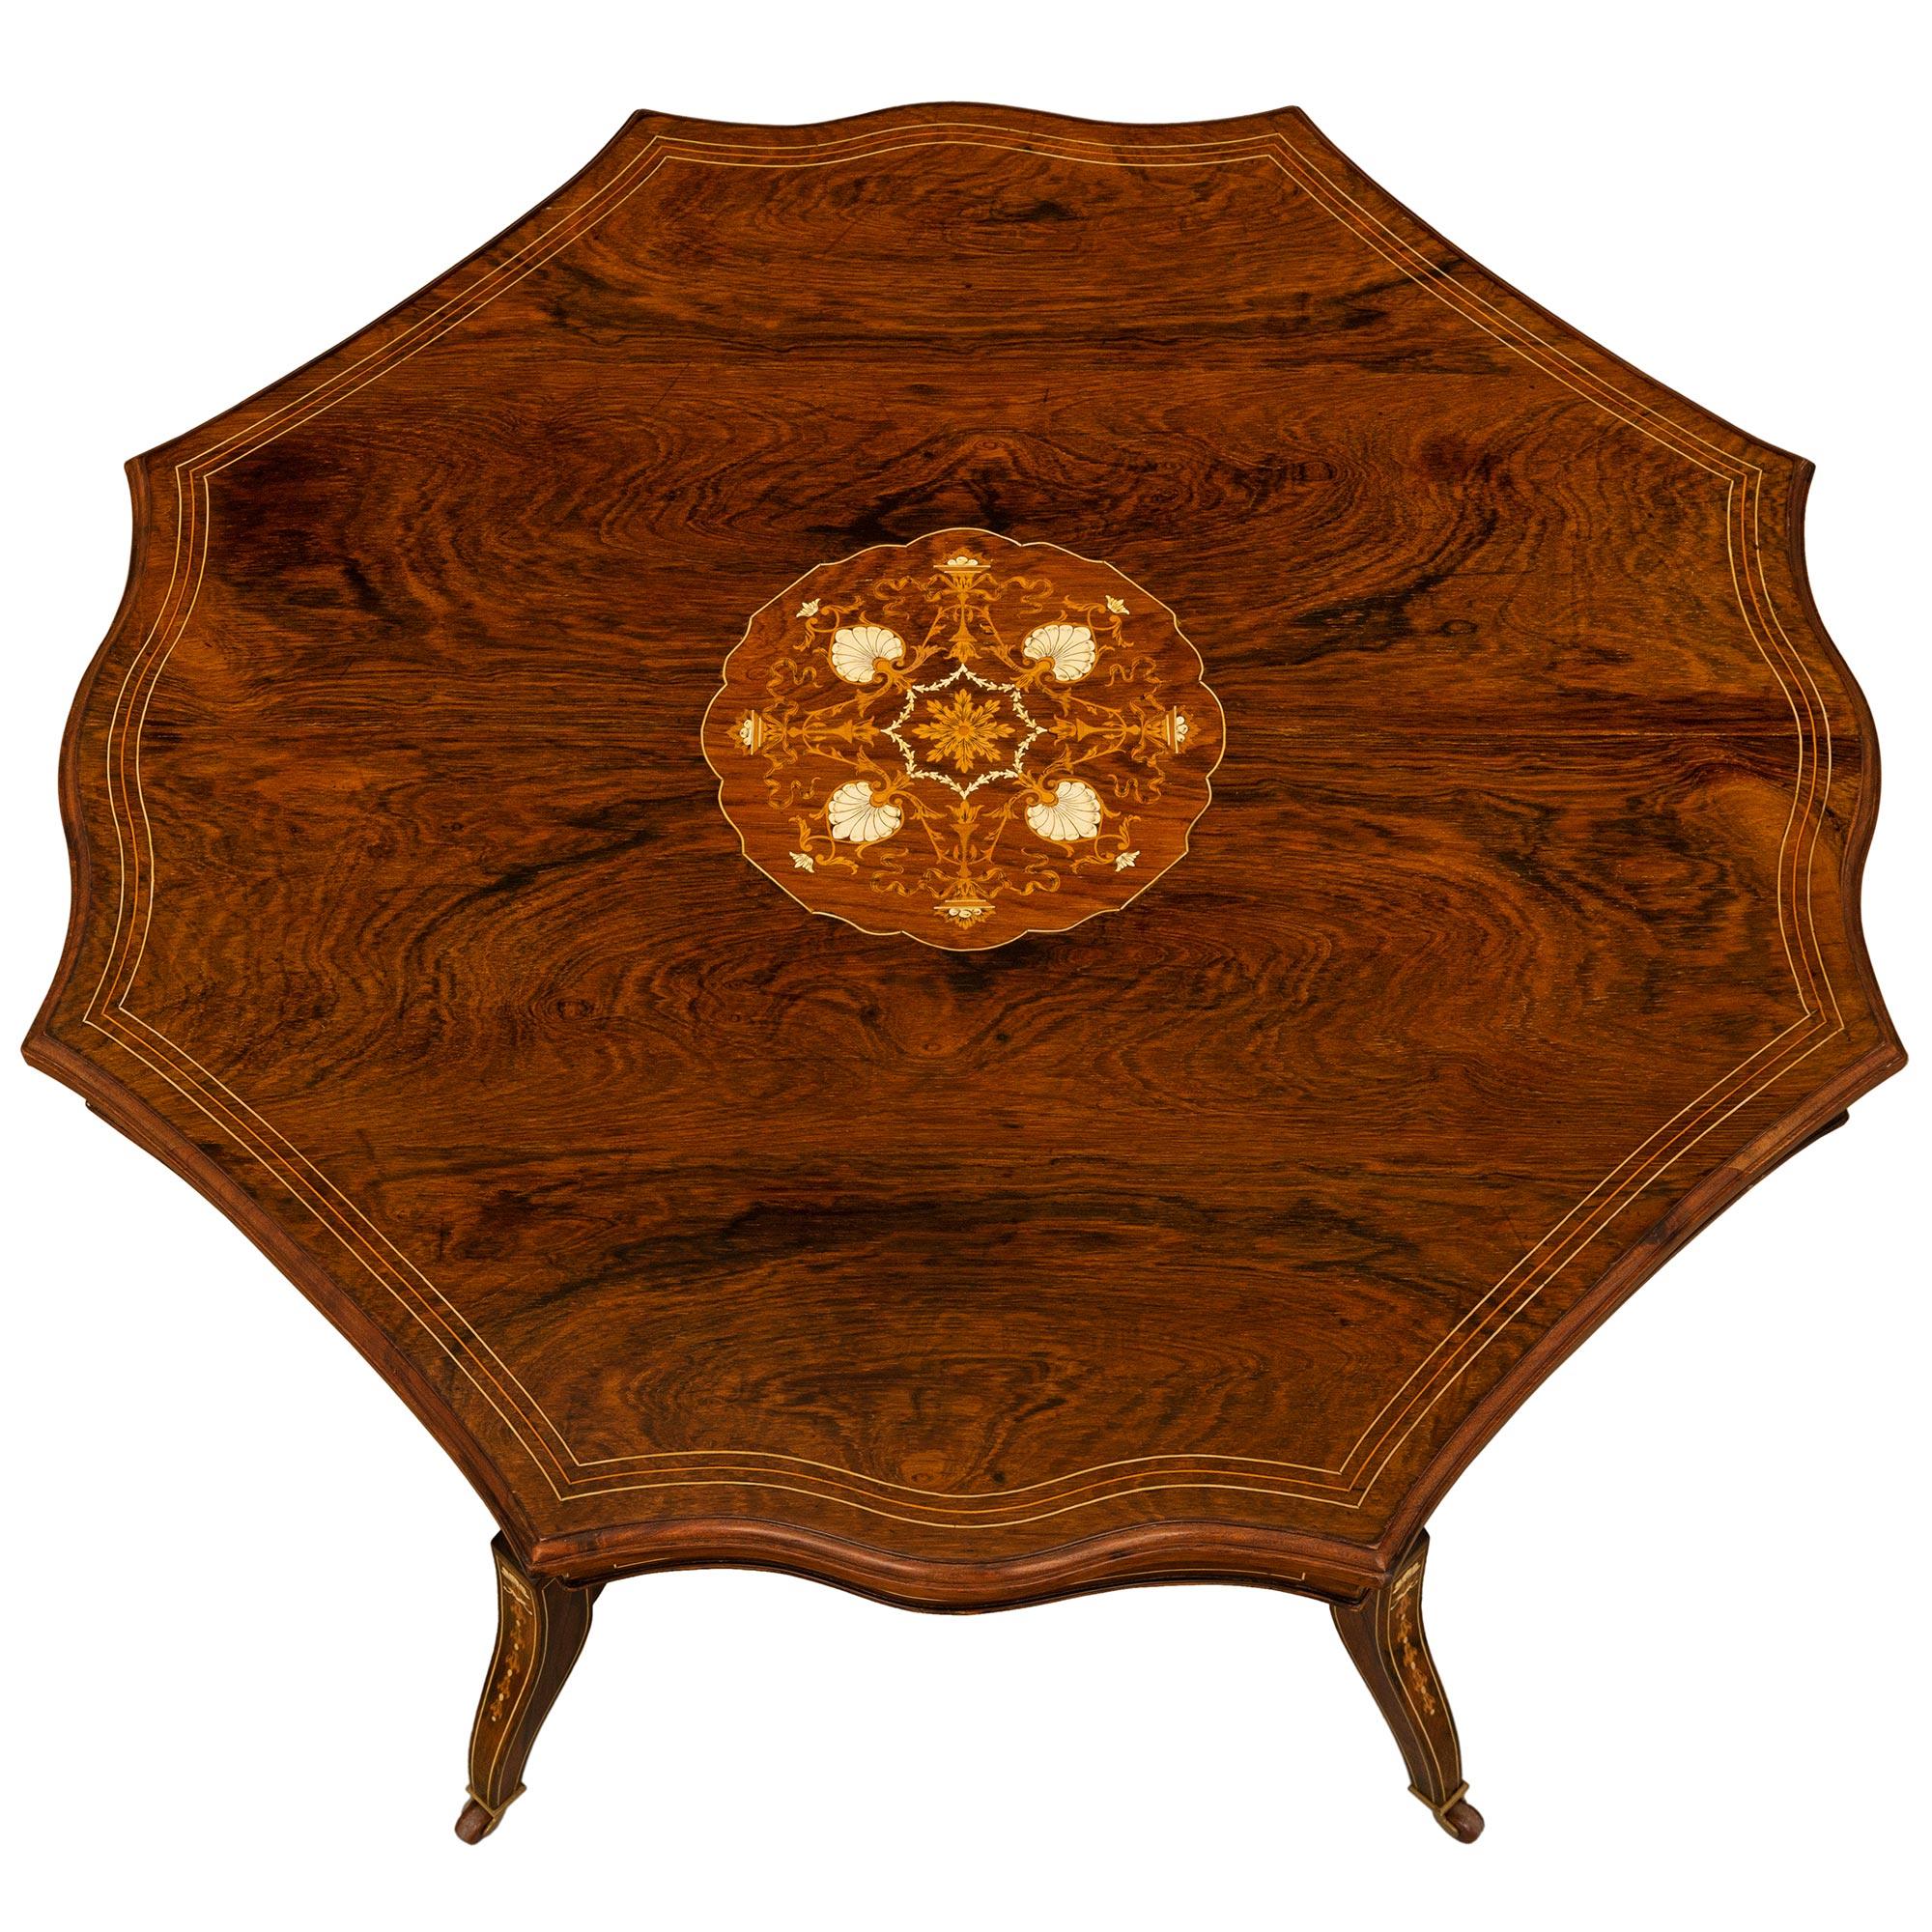 Table centrale/de chevet en palissandre, os et marqueterie, de style Regency, du 19e siècle anglais. La table repose sur d'élégants pieds légèrement incurvés, ornés de jolis motifs feuillagés incrustés. Chaque pied est rattaché à un châssis très